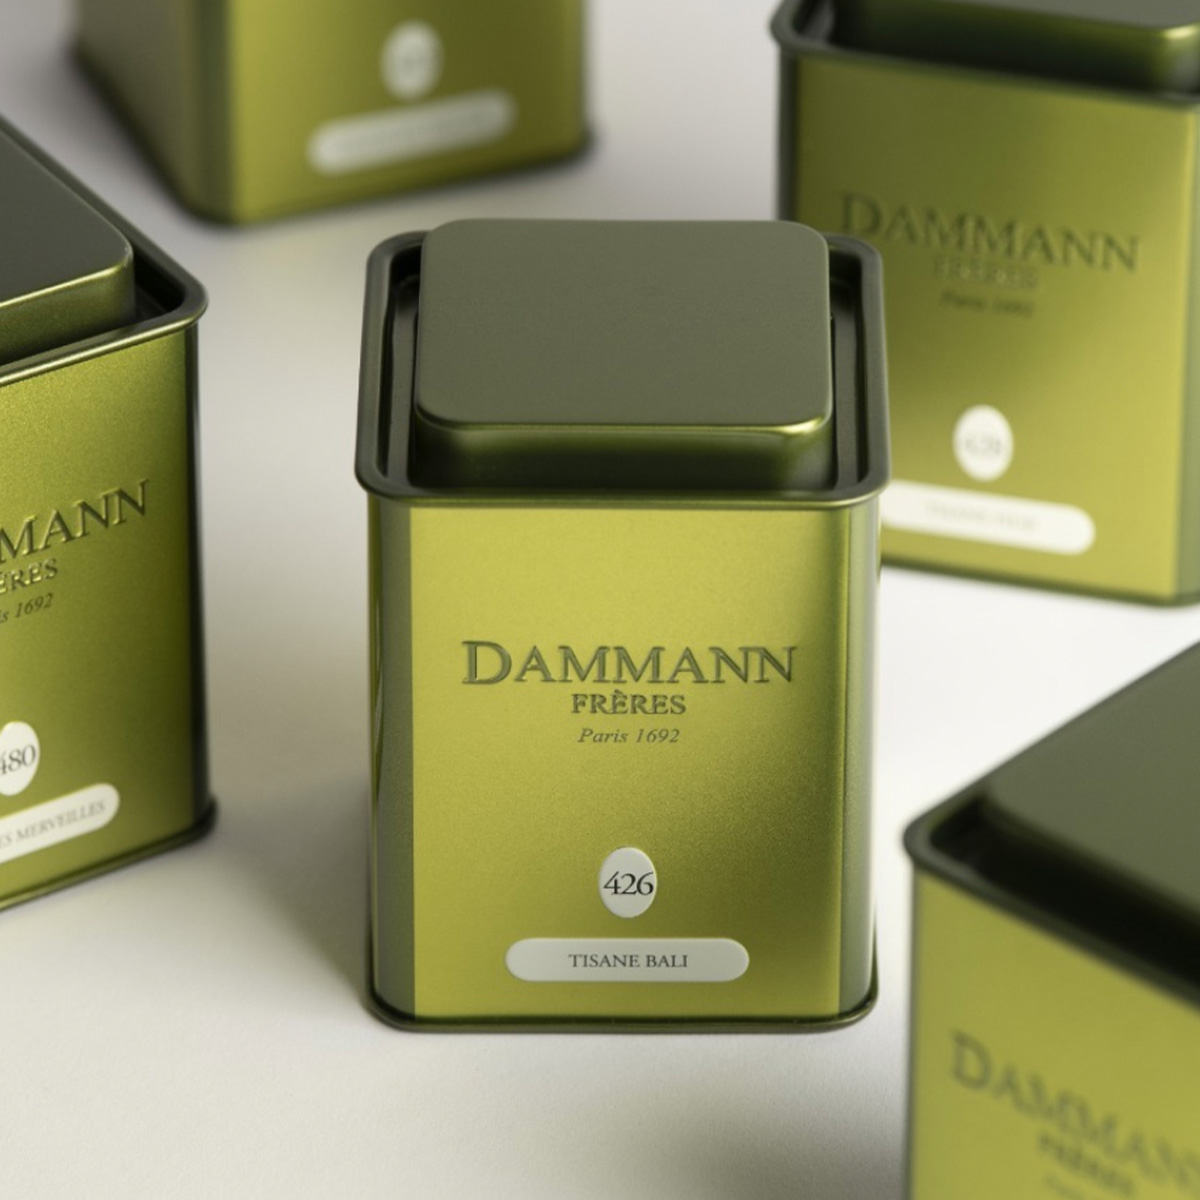 Dammann - Identité Visuelle & Packaging